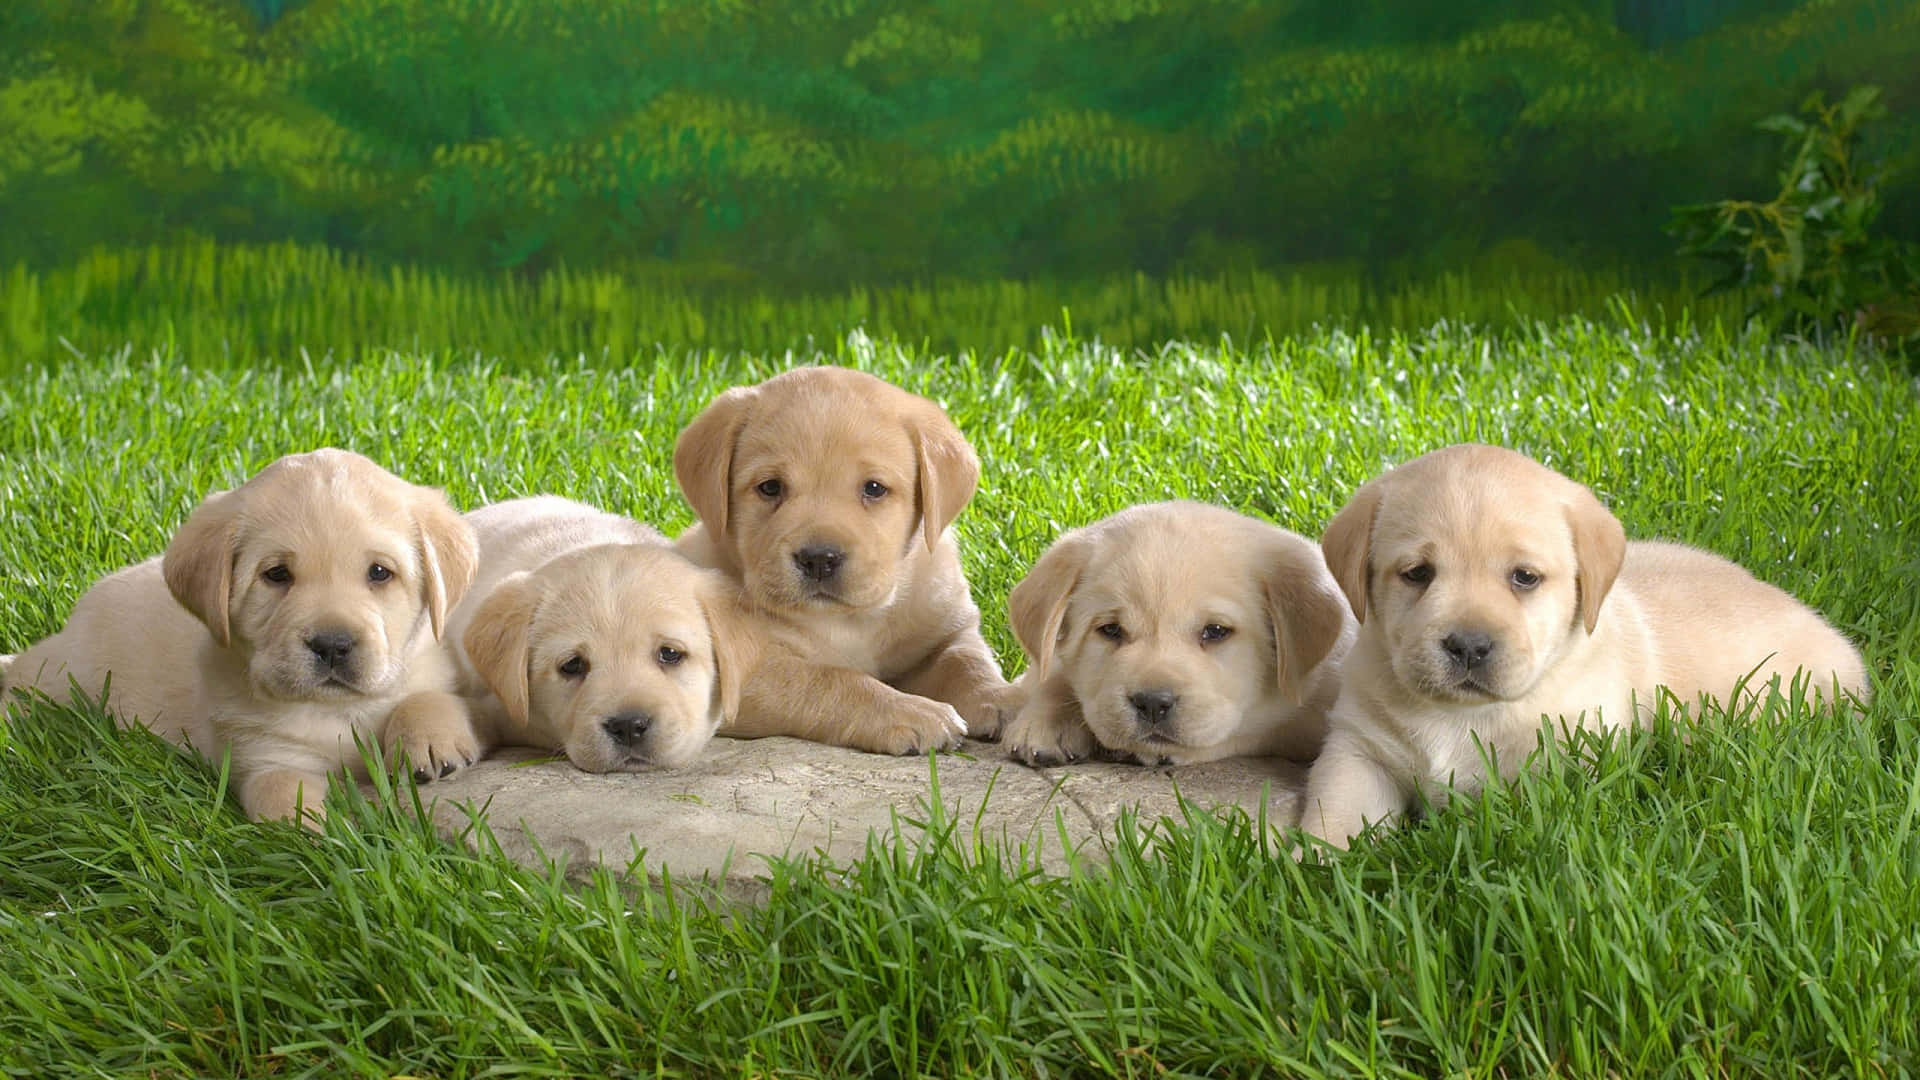 Imagende Cinco Cachorros De Labrador Golden Retriever.